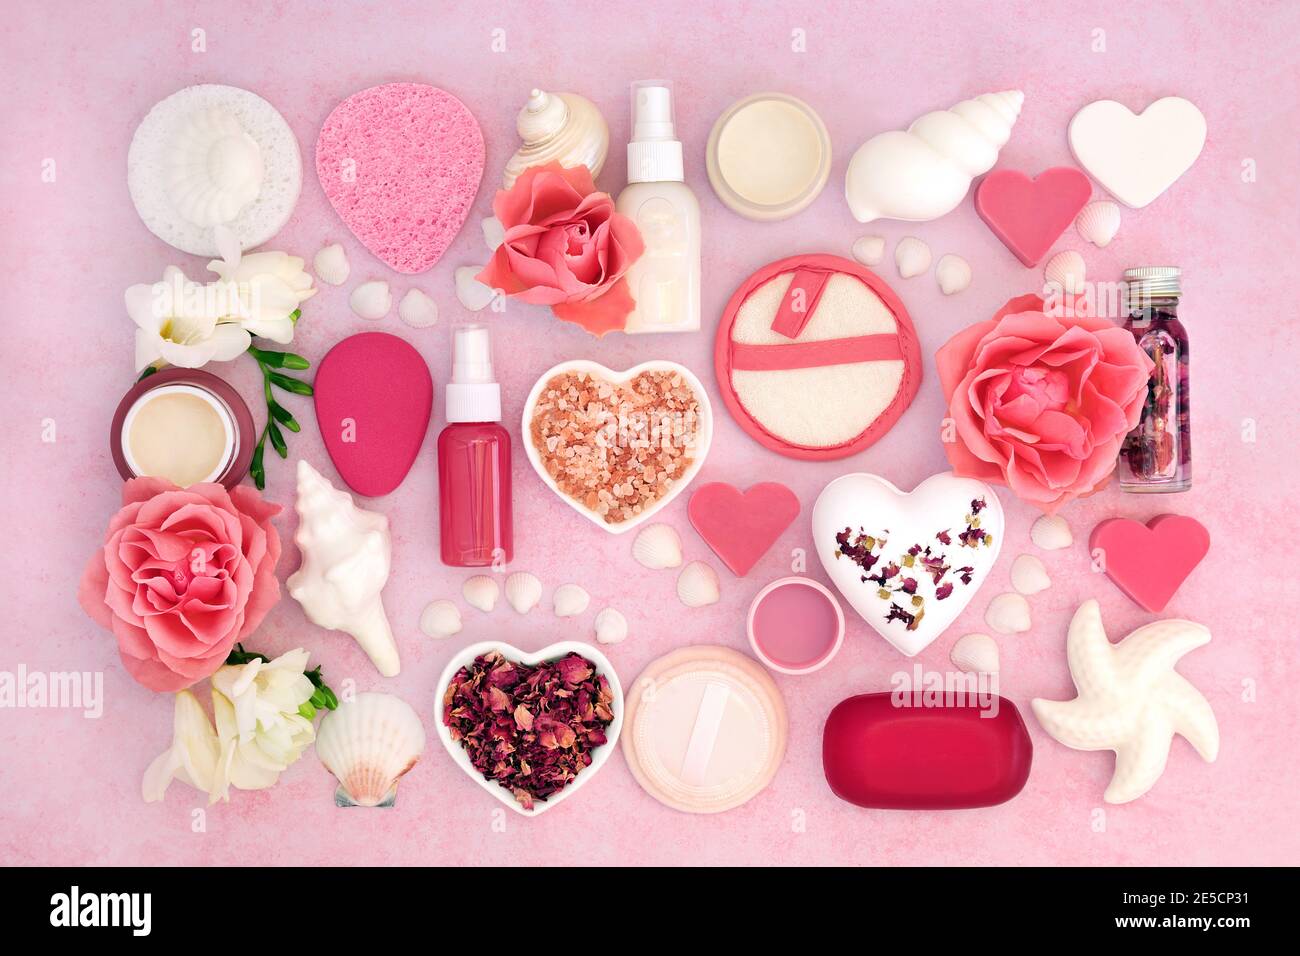 Beauty-Spa-Behandlungsprodukte für die Hautpflege & Körperpflege mit Rose & Freesia Blumen bilden einen abstrakten Hintergrund. Draufsicht auf meliertes Pink. Stockfoto